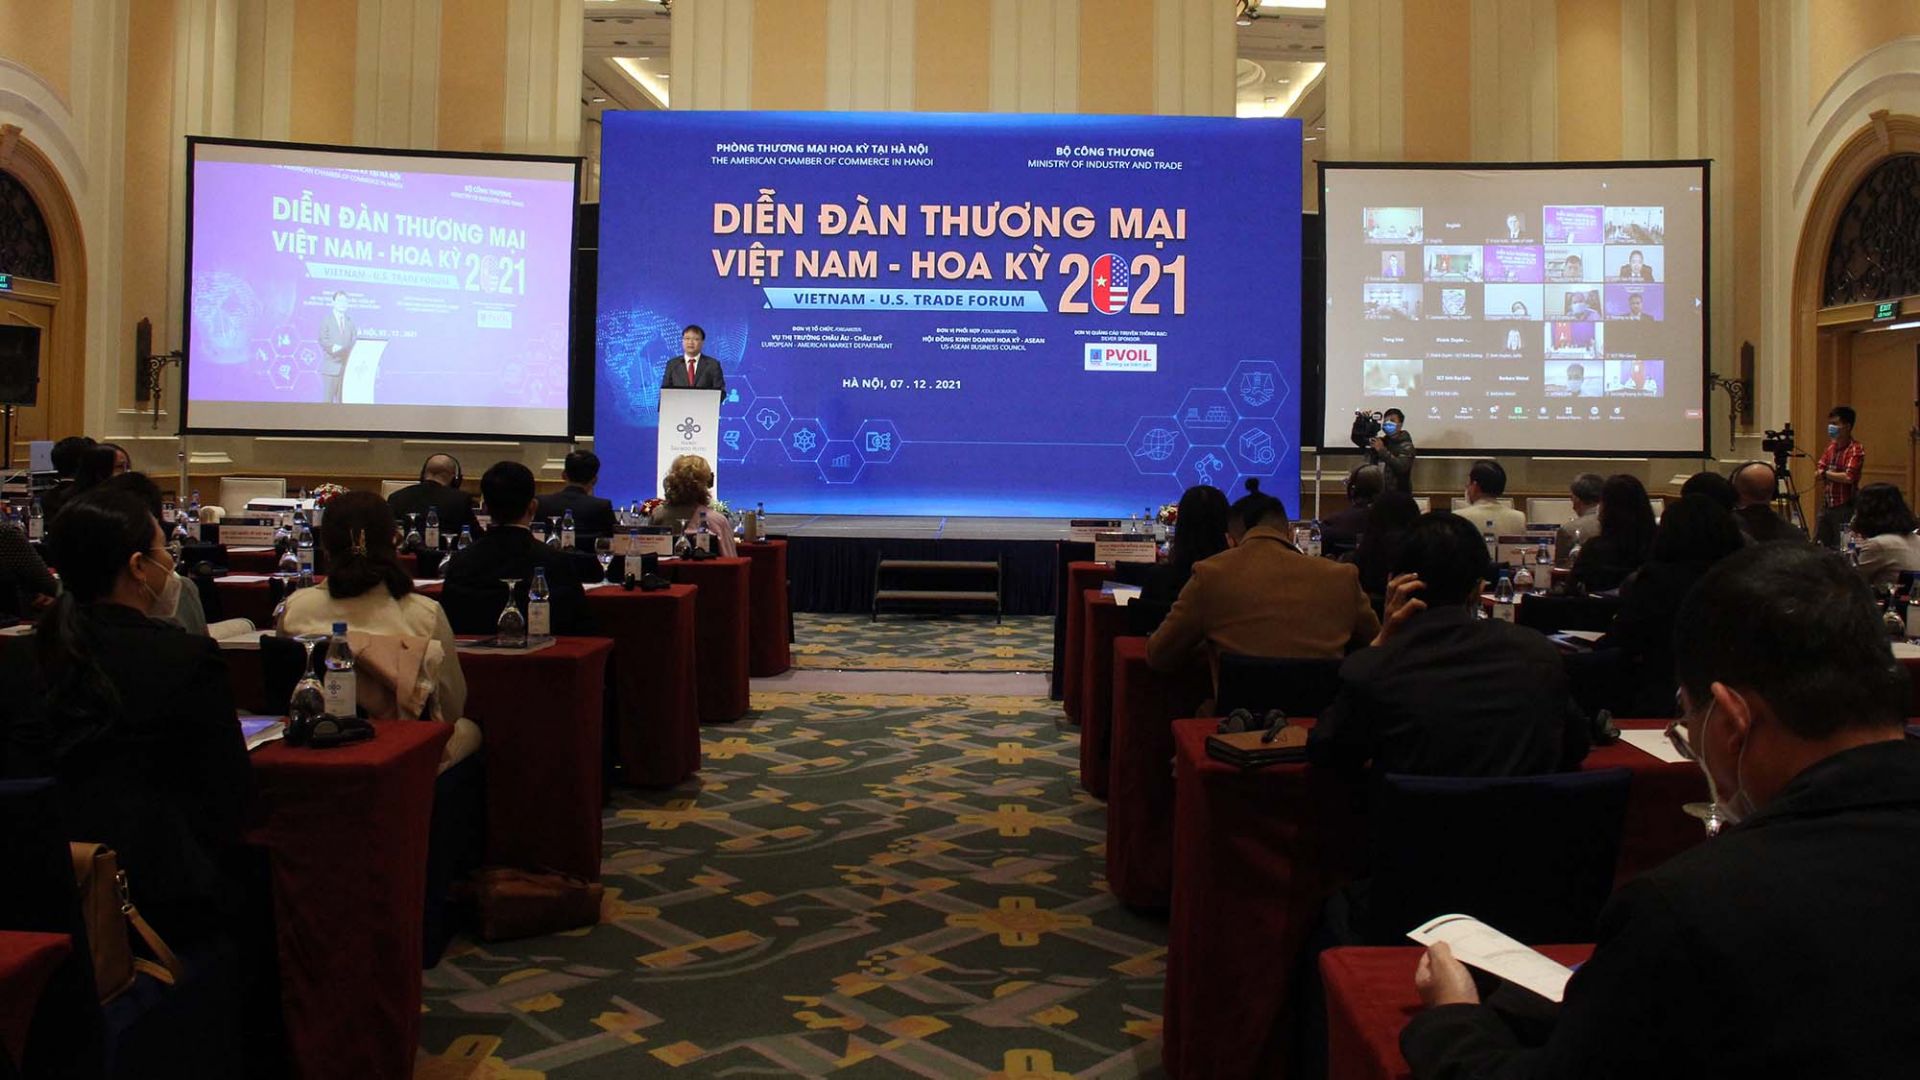 Việt Nam - Hoa Kỳ: Tăng cường kết nối, thích ứng để phát triển trong bối cảnh mới